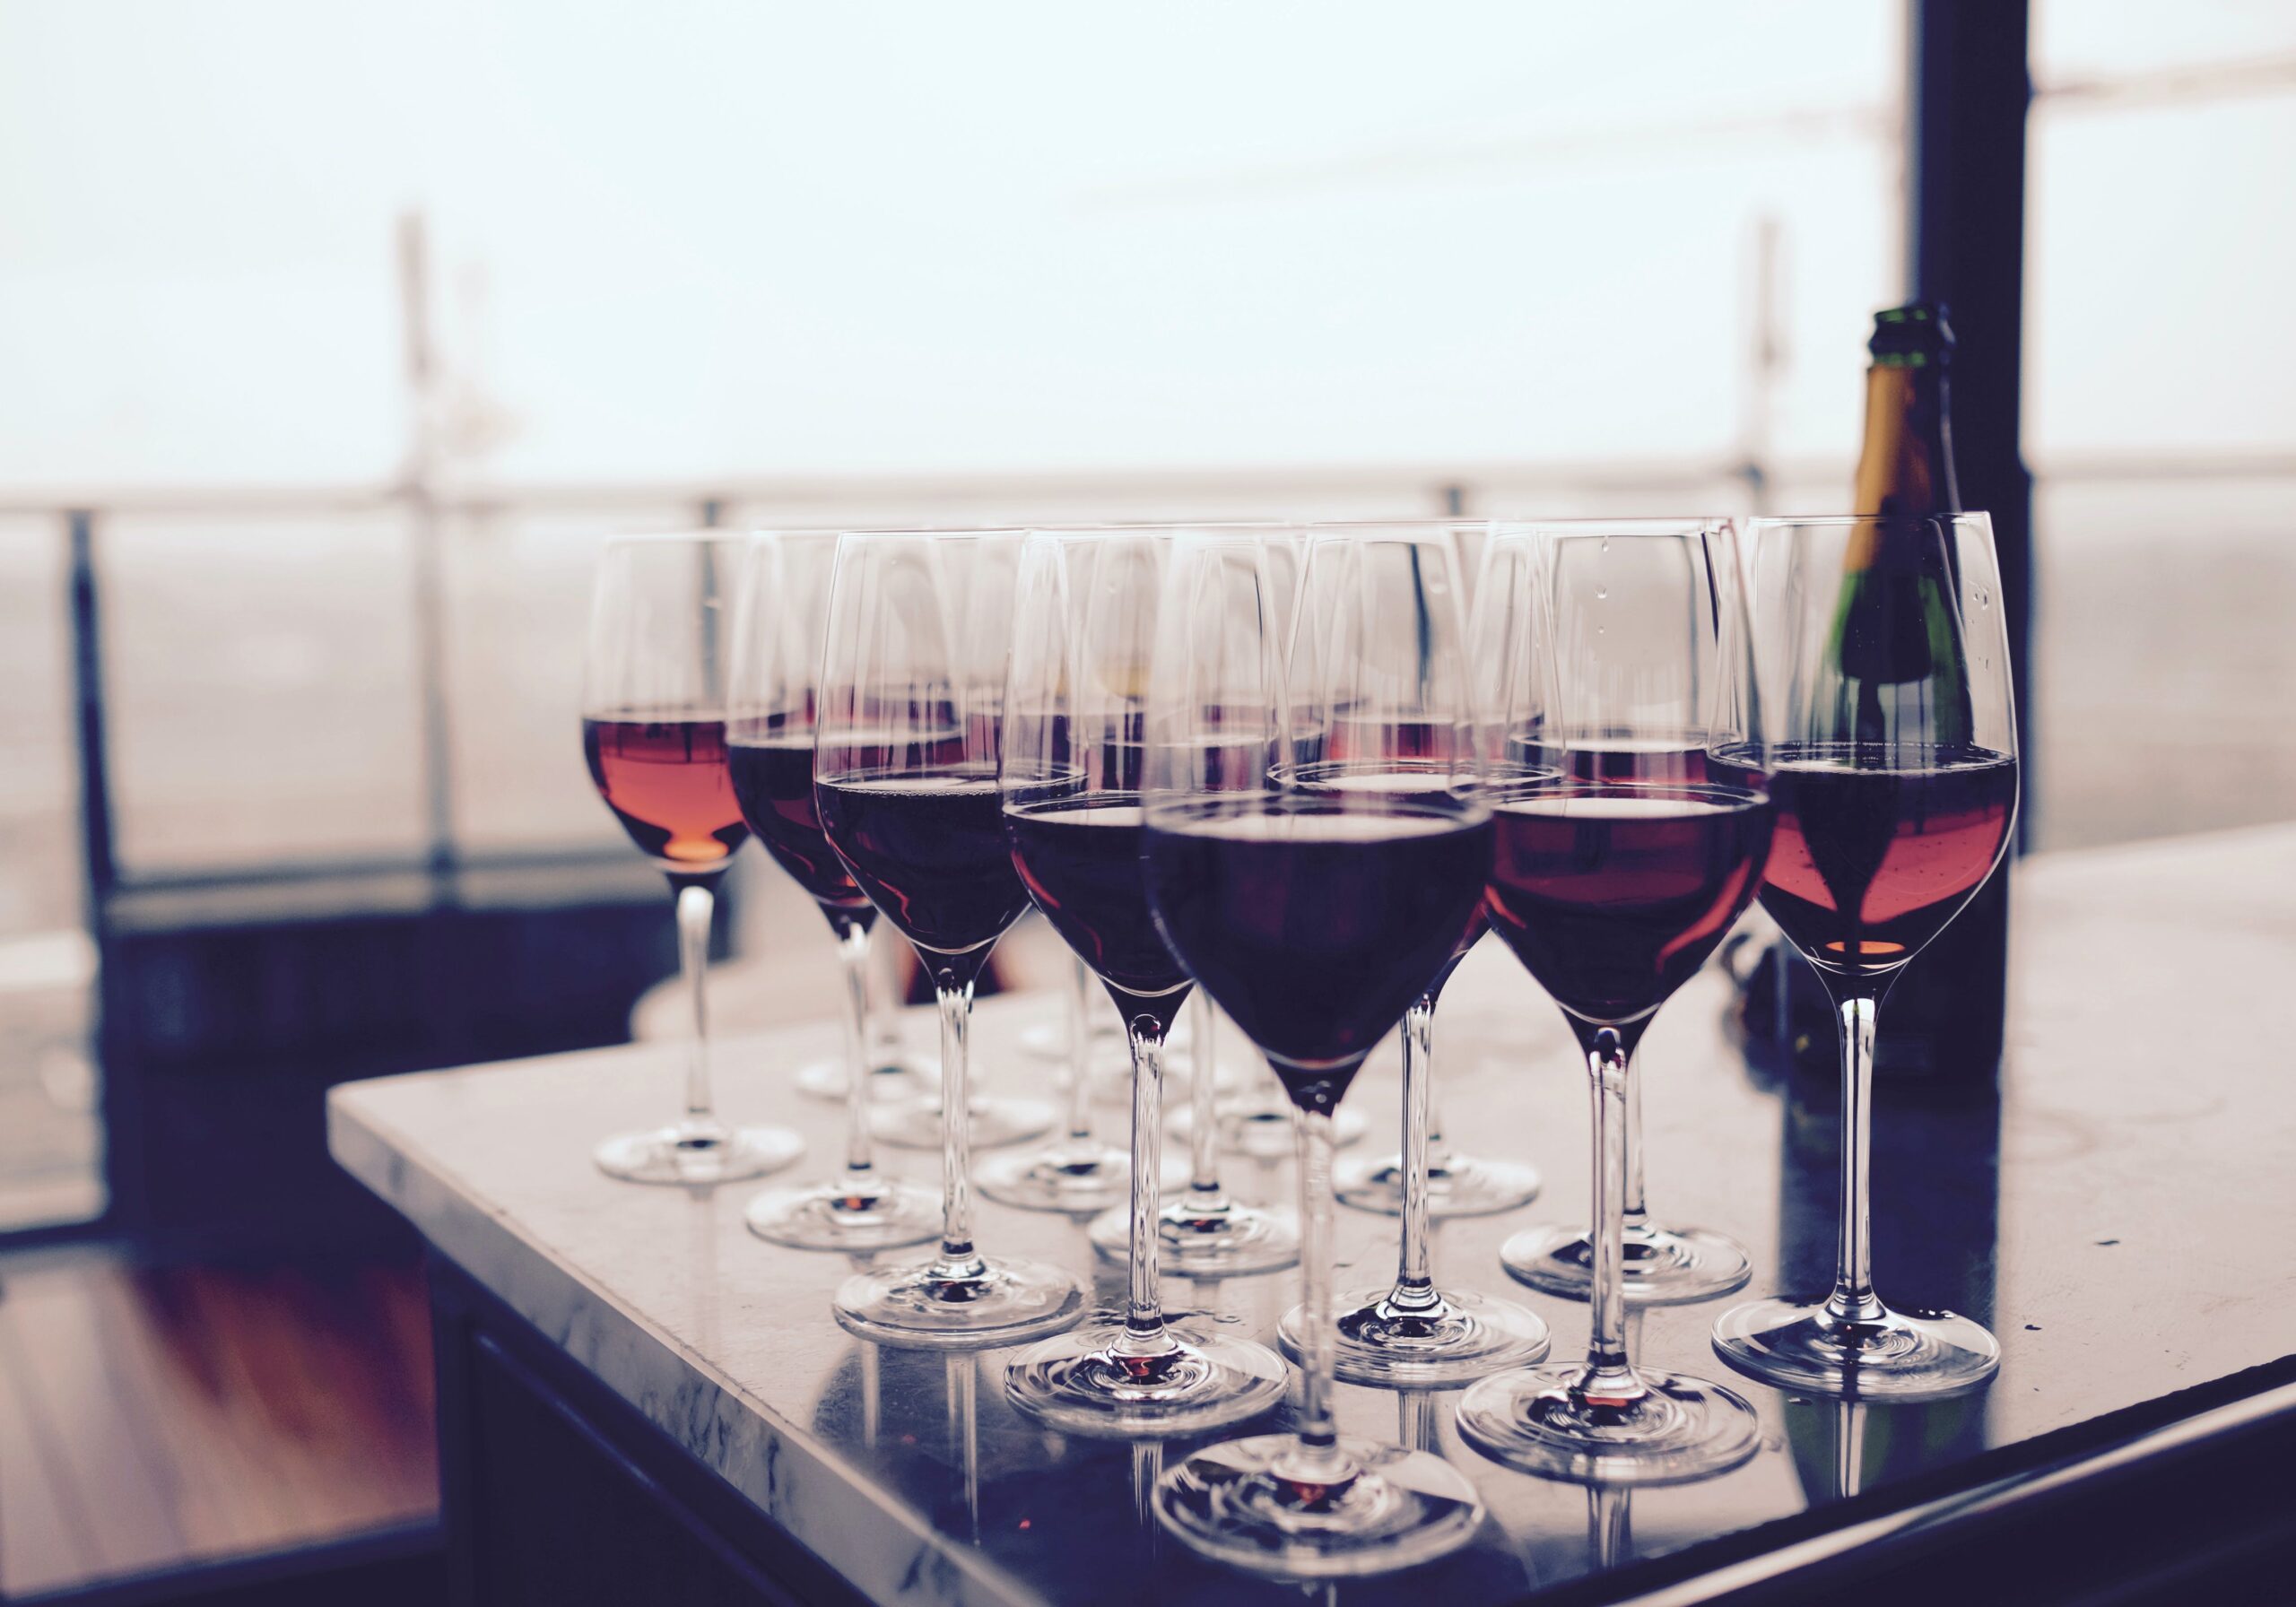 trinkreife von Wein: Wie lange muss Wein reifen?